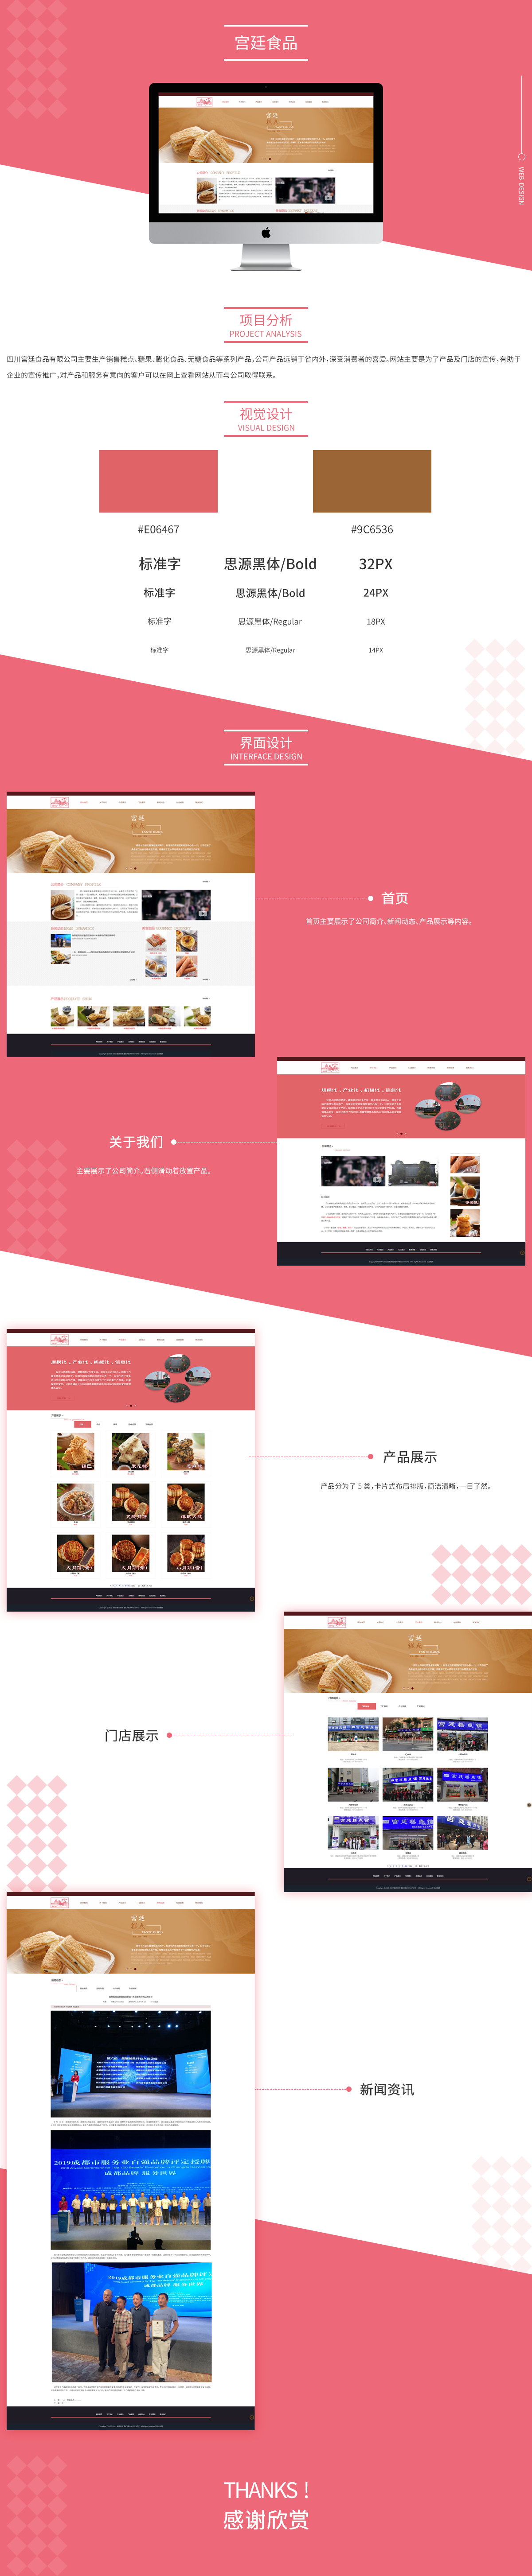 四川省宫廷食品有限责任企业网站品牌网站案例